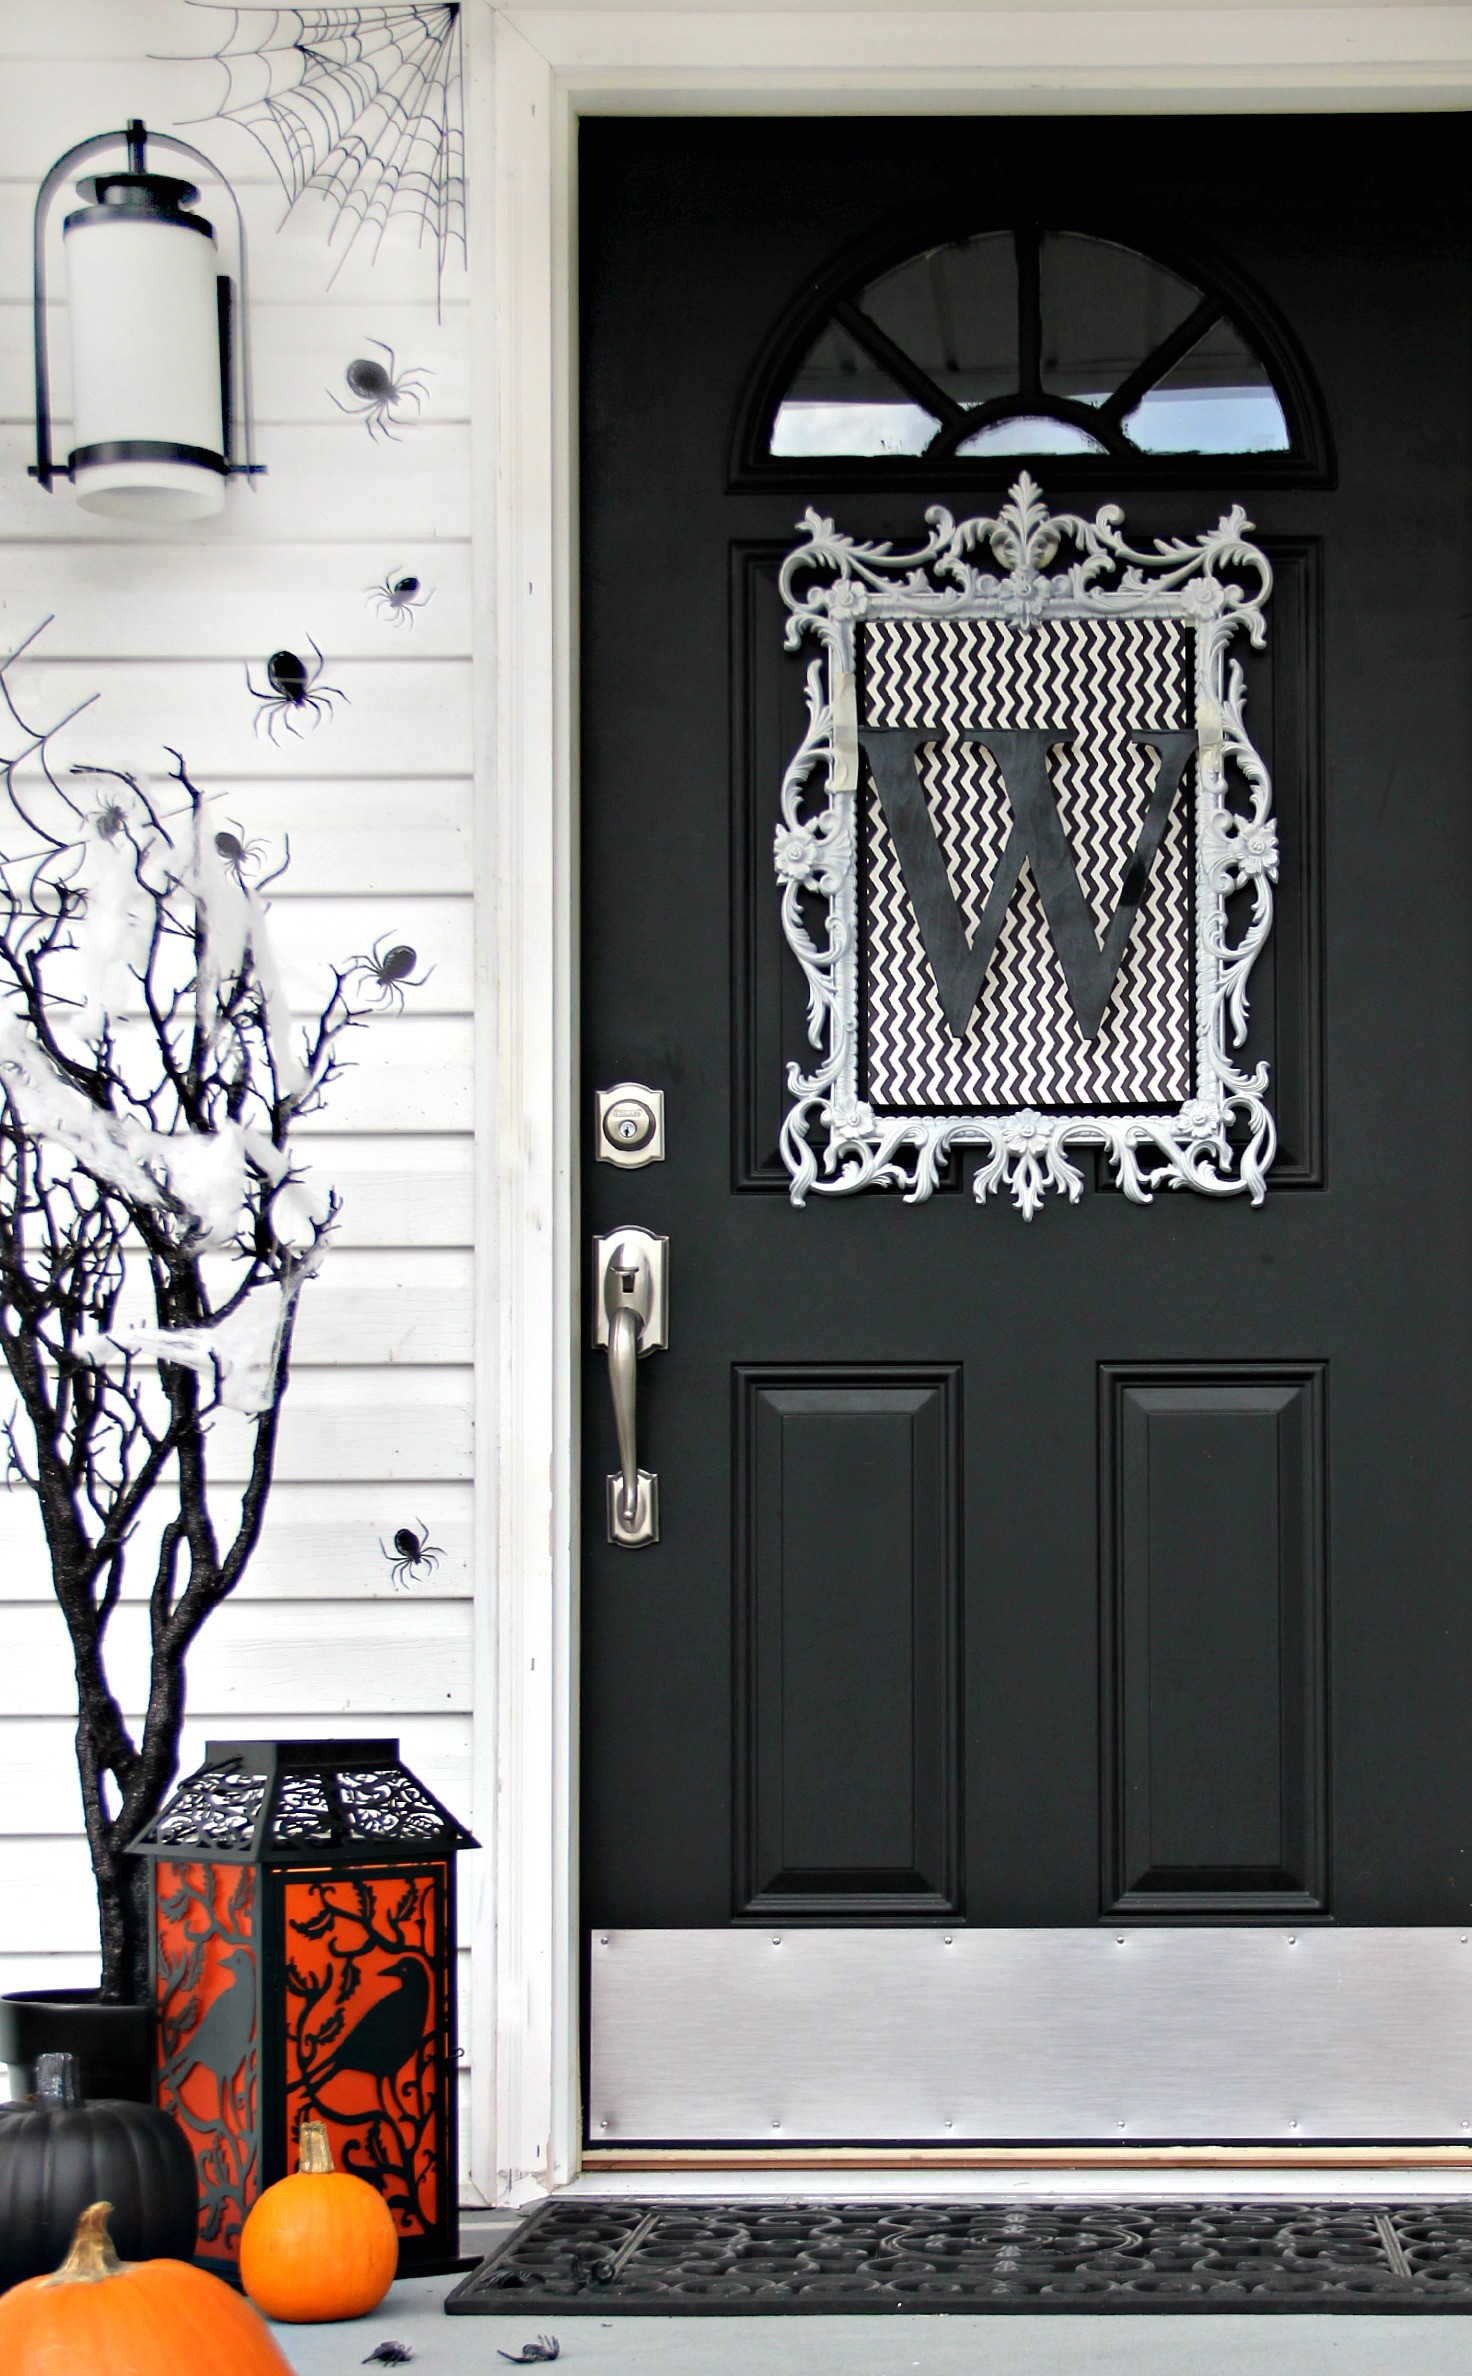 Halloween Door Decoration Ideas
 Four Ideas For Inexpensive Halloween Door Decorations